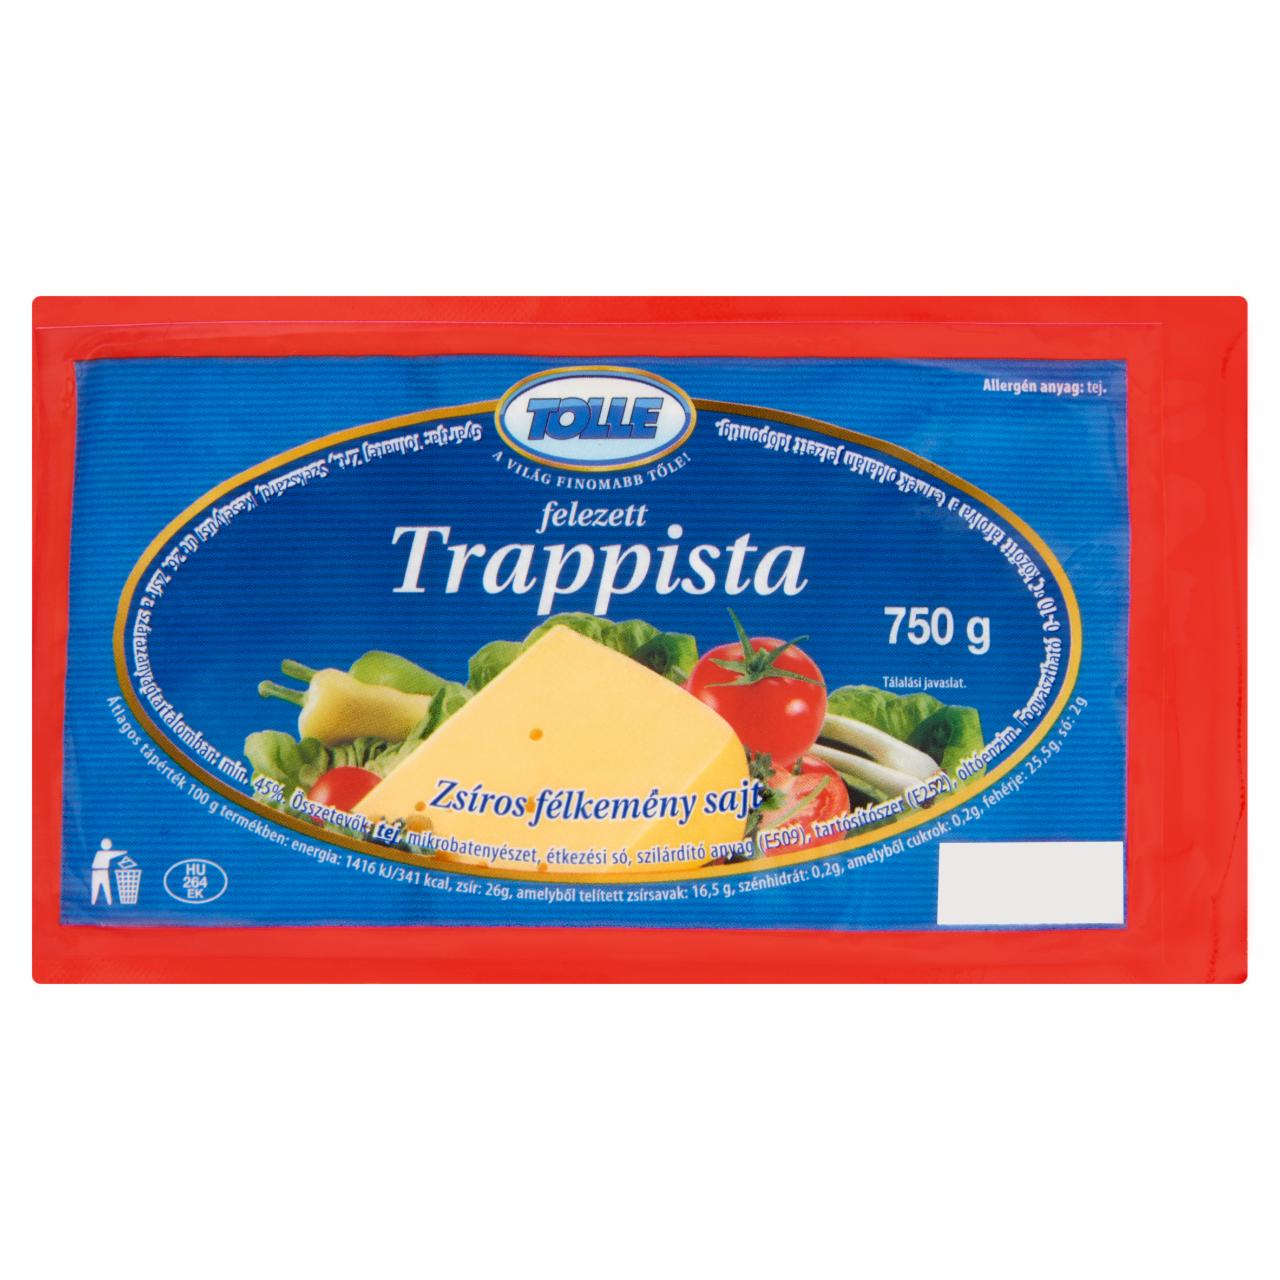 Képek - Tolle zsíros félkemény felezett trappista sajt 750 g